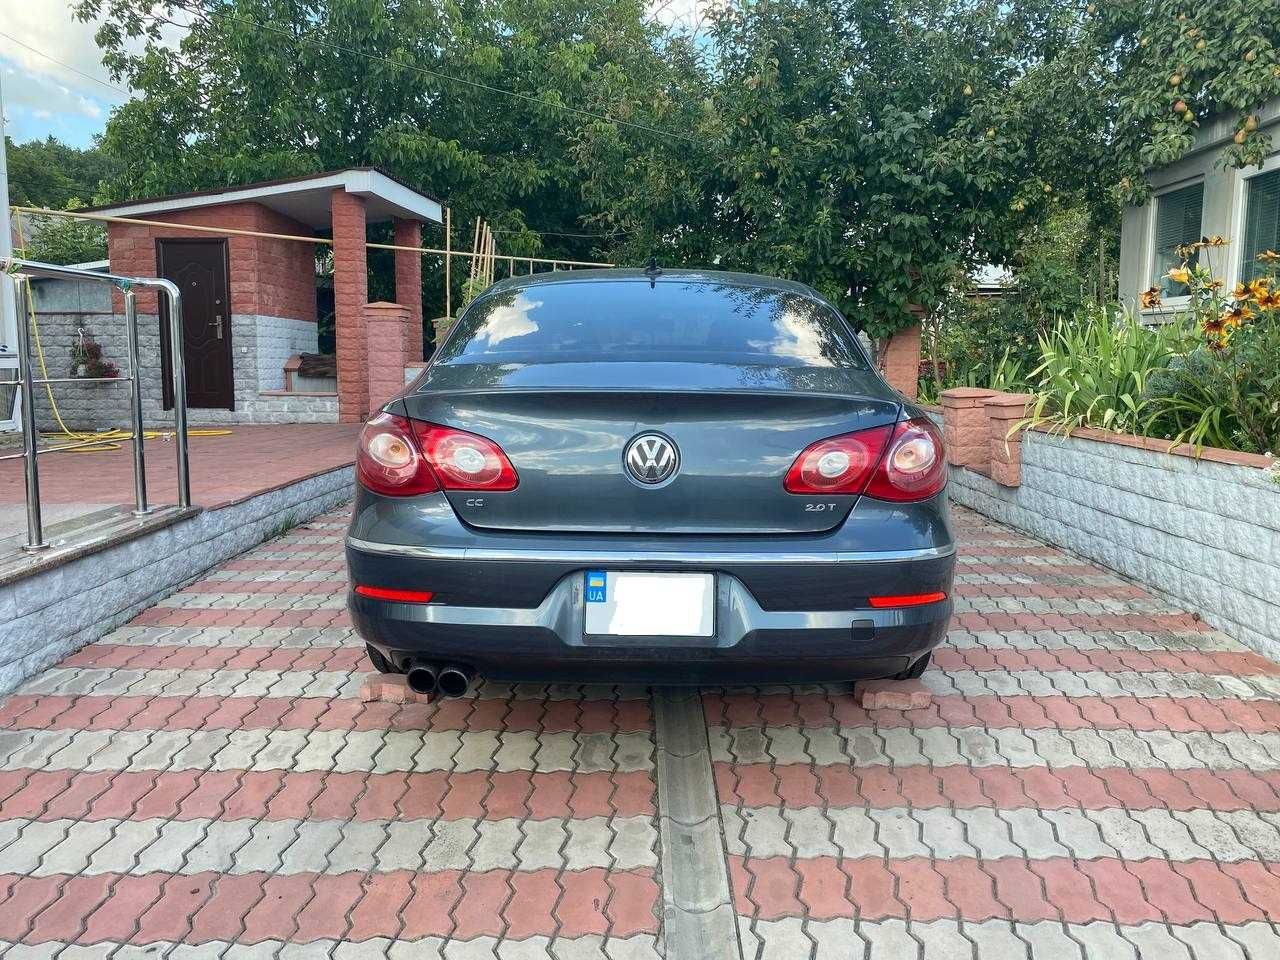 Volkswagen CC 2012